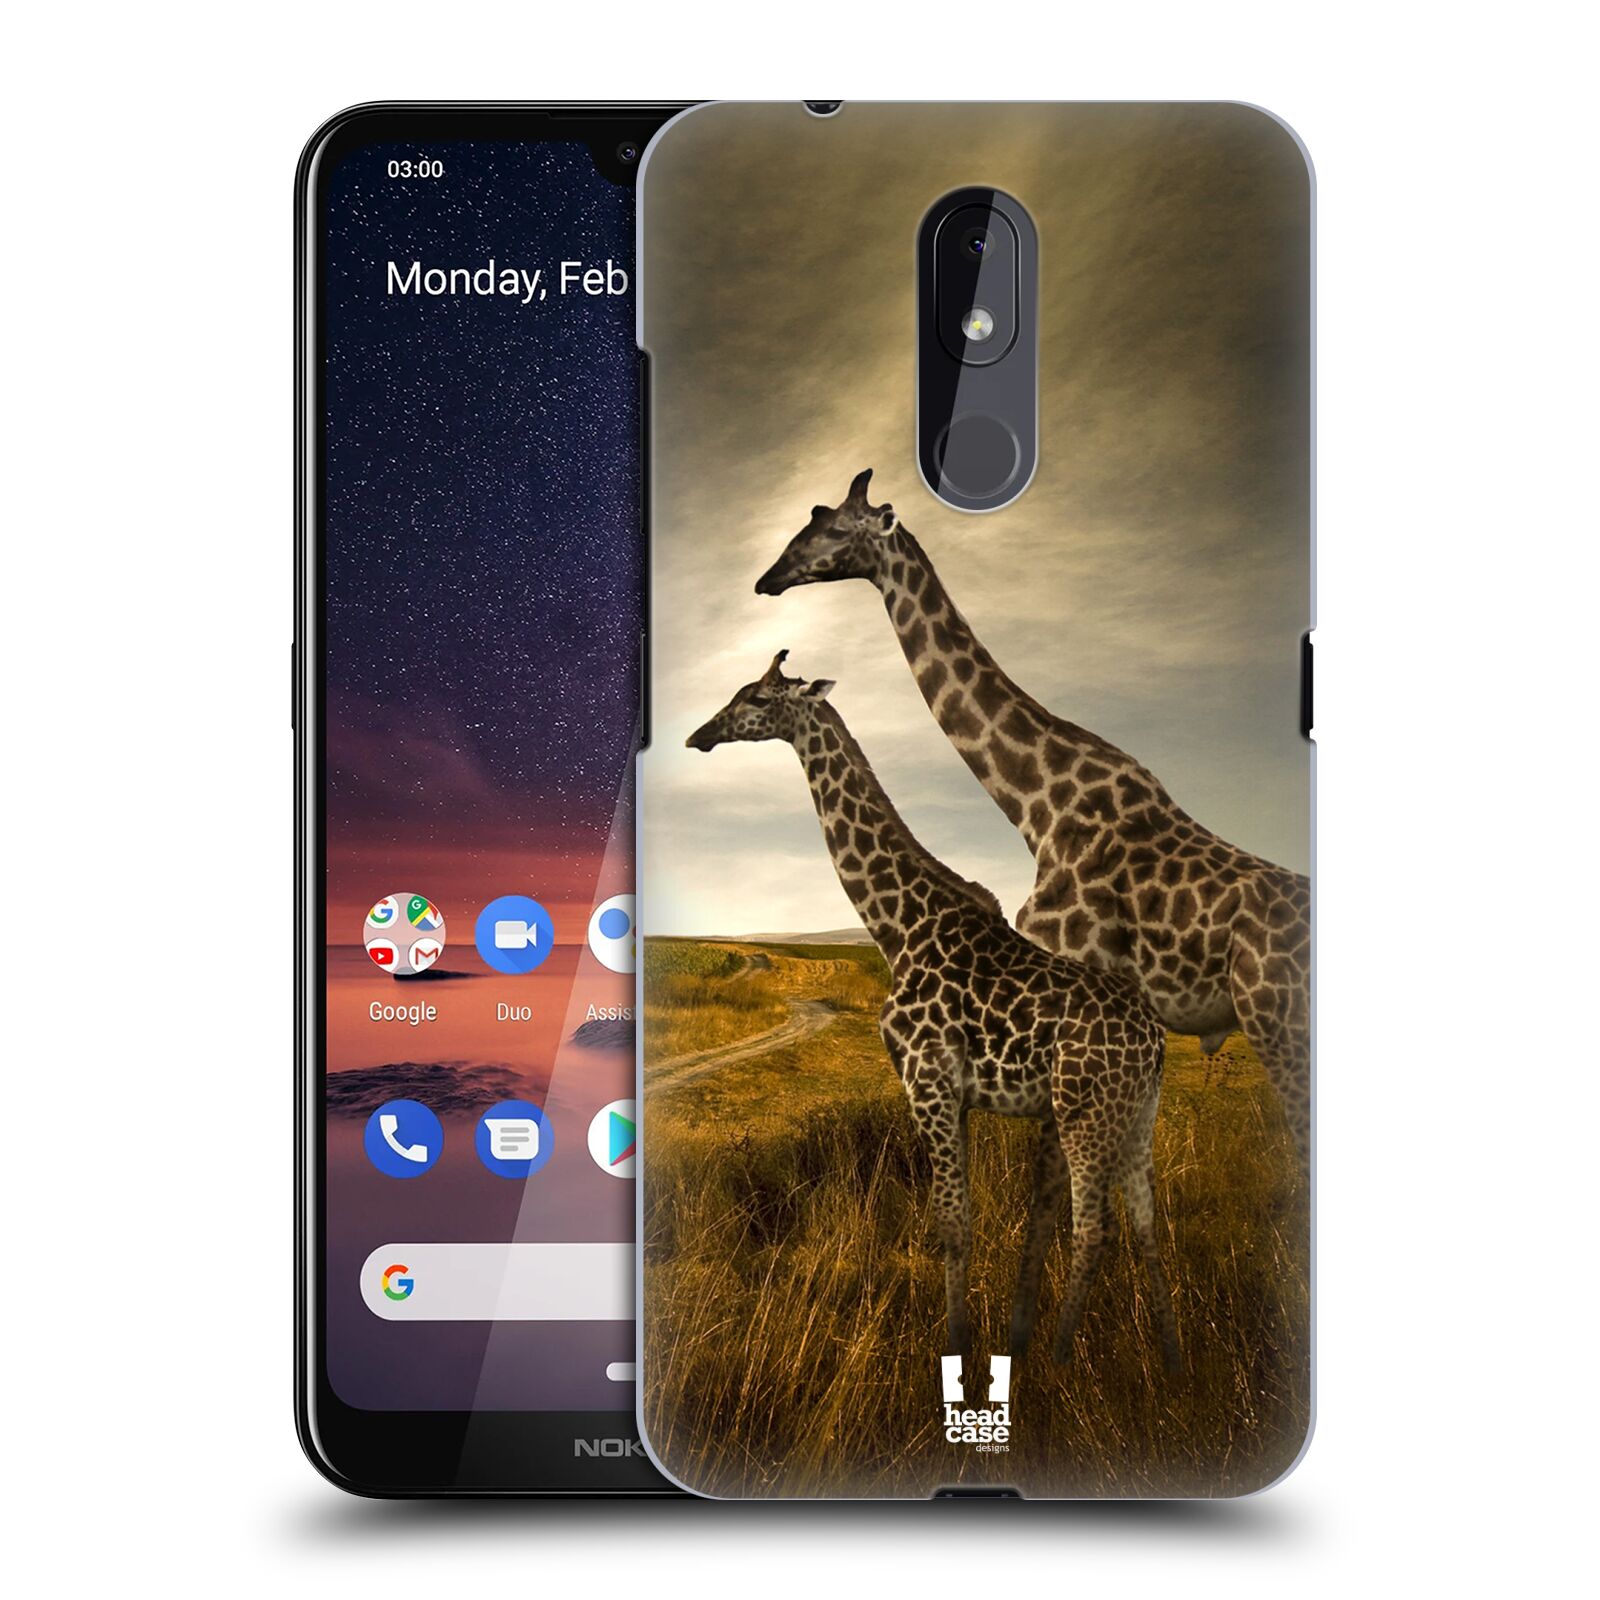 Pouzdro na mobil Nokia 3.2 - HEAD CASE - vzor Divočina, Divoký život a zvířata foto AFRIKA ŽIRAFY VÝHLED